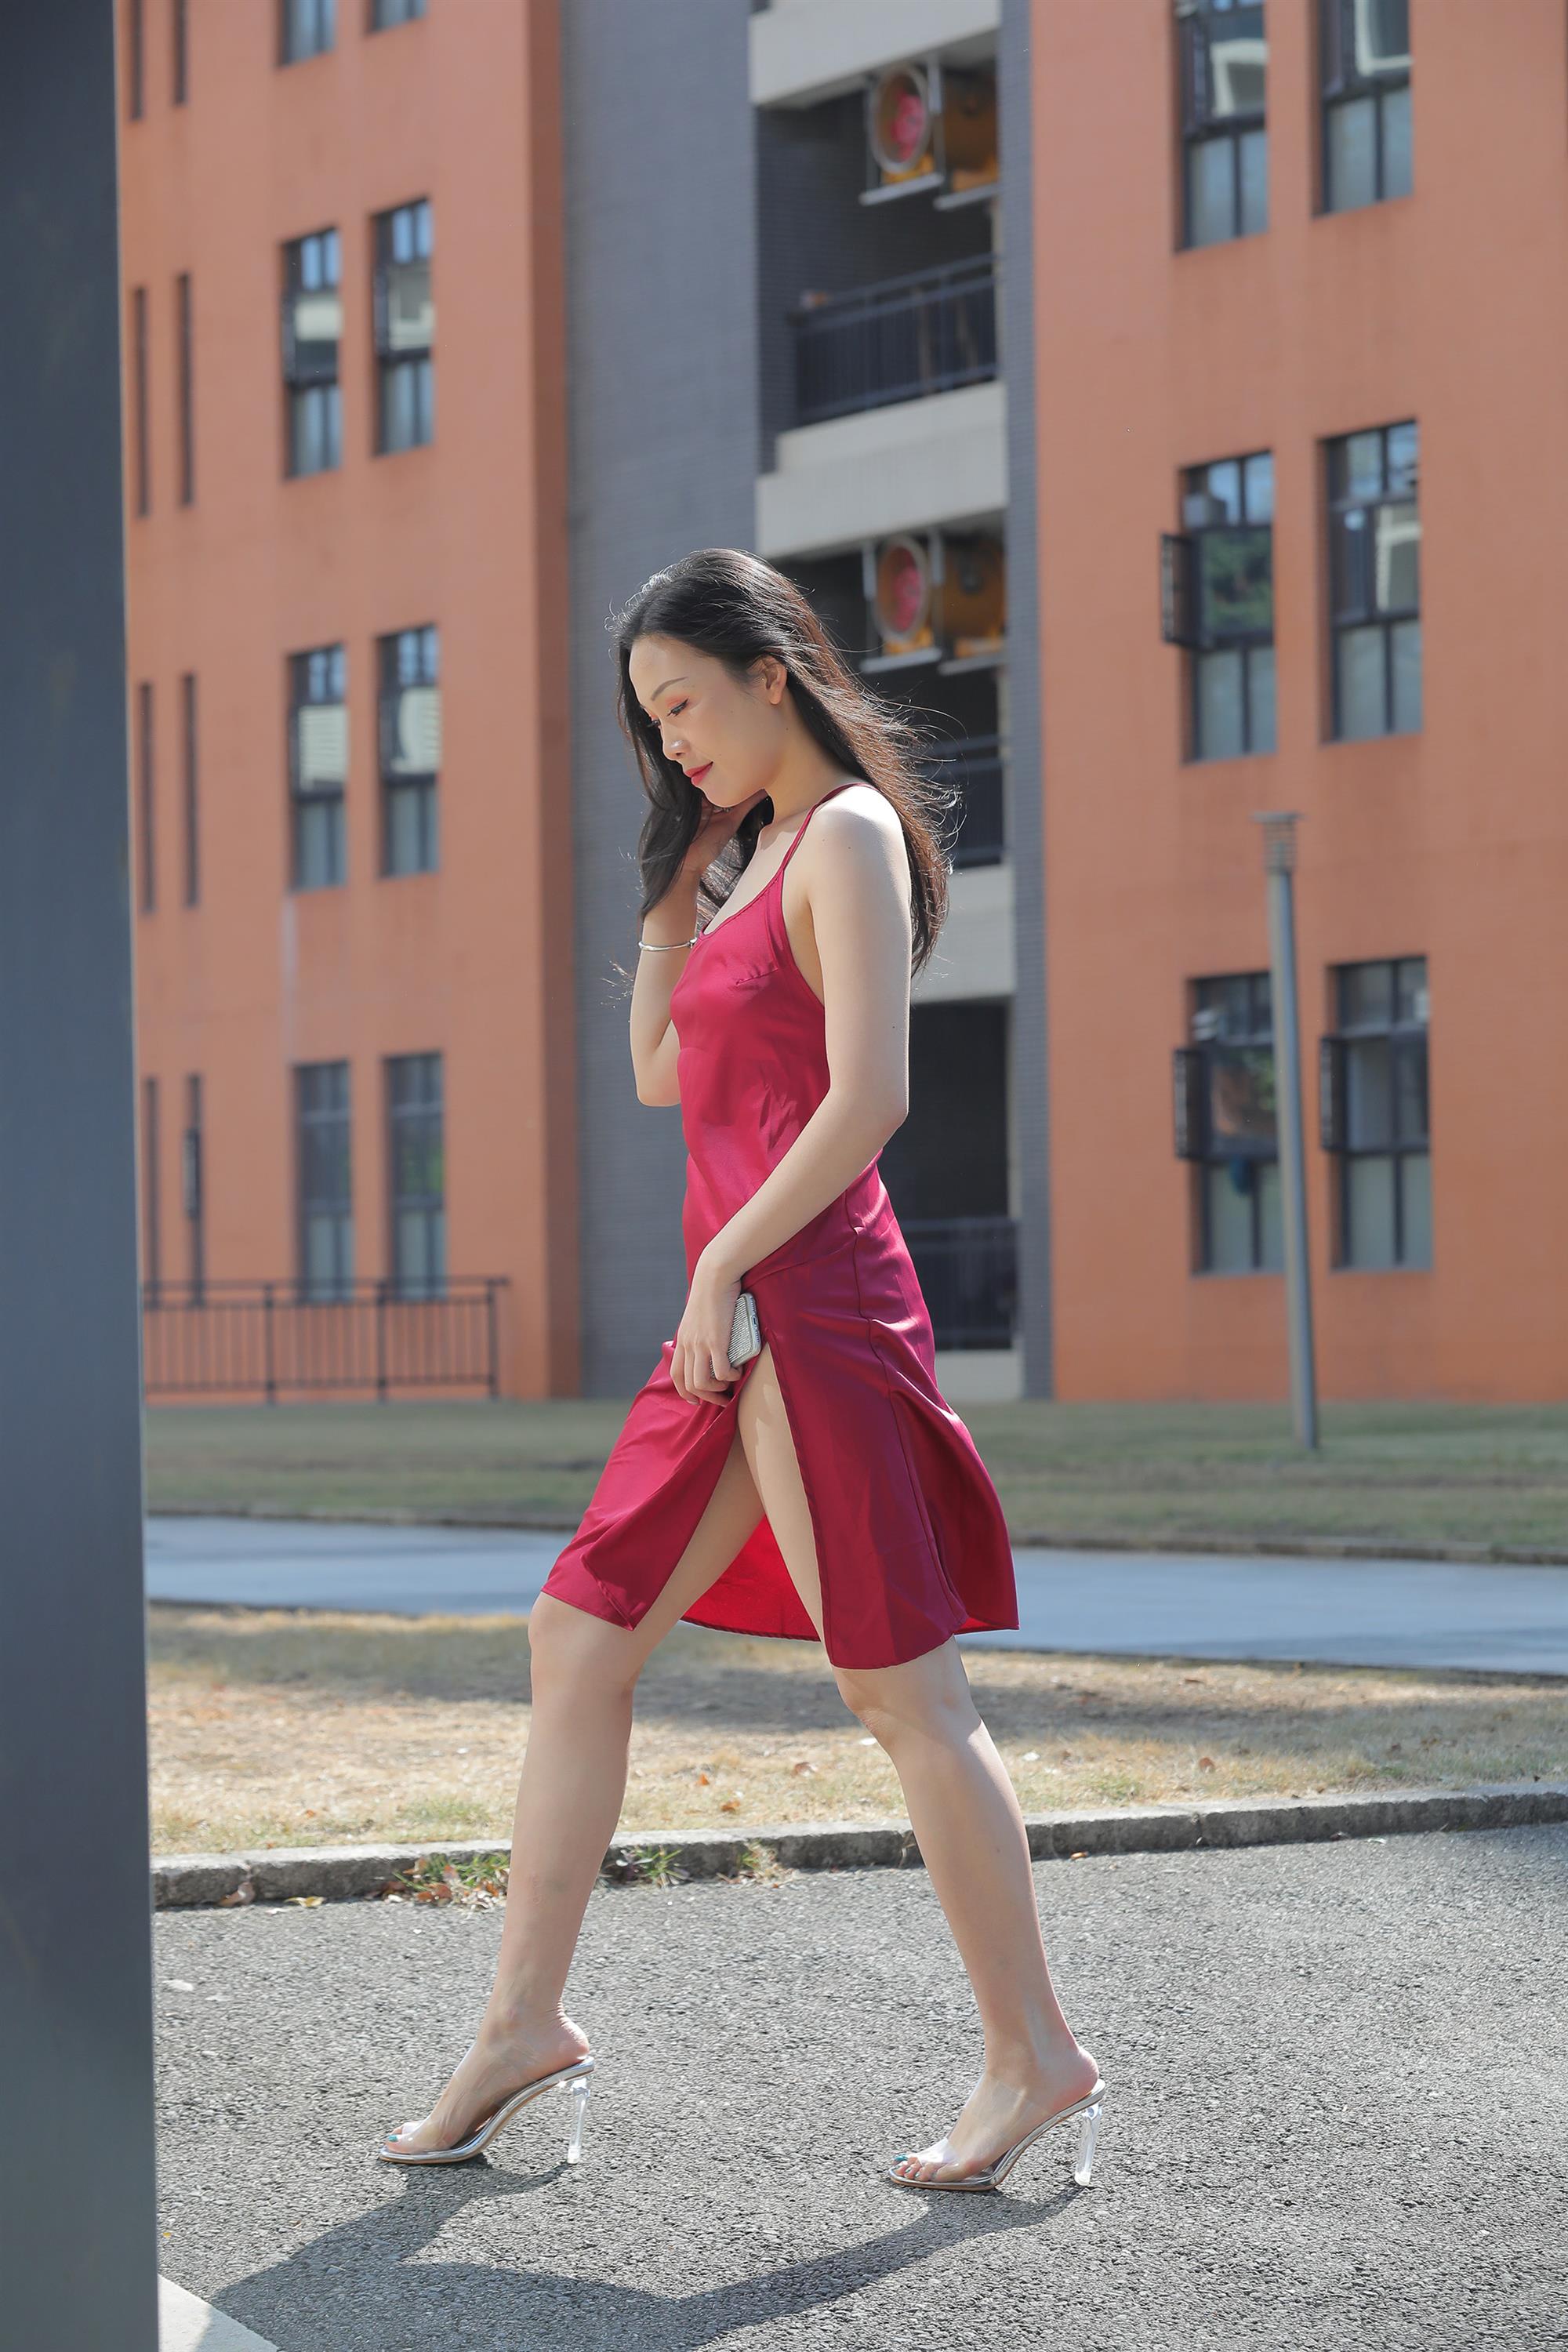 Street beauty in a red dress - 30.jpg